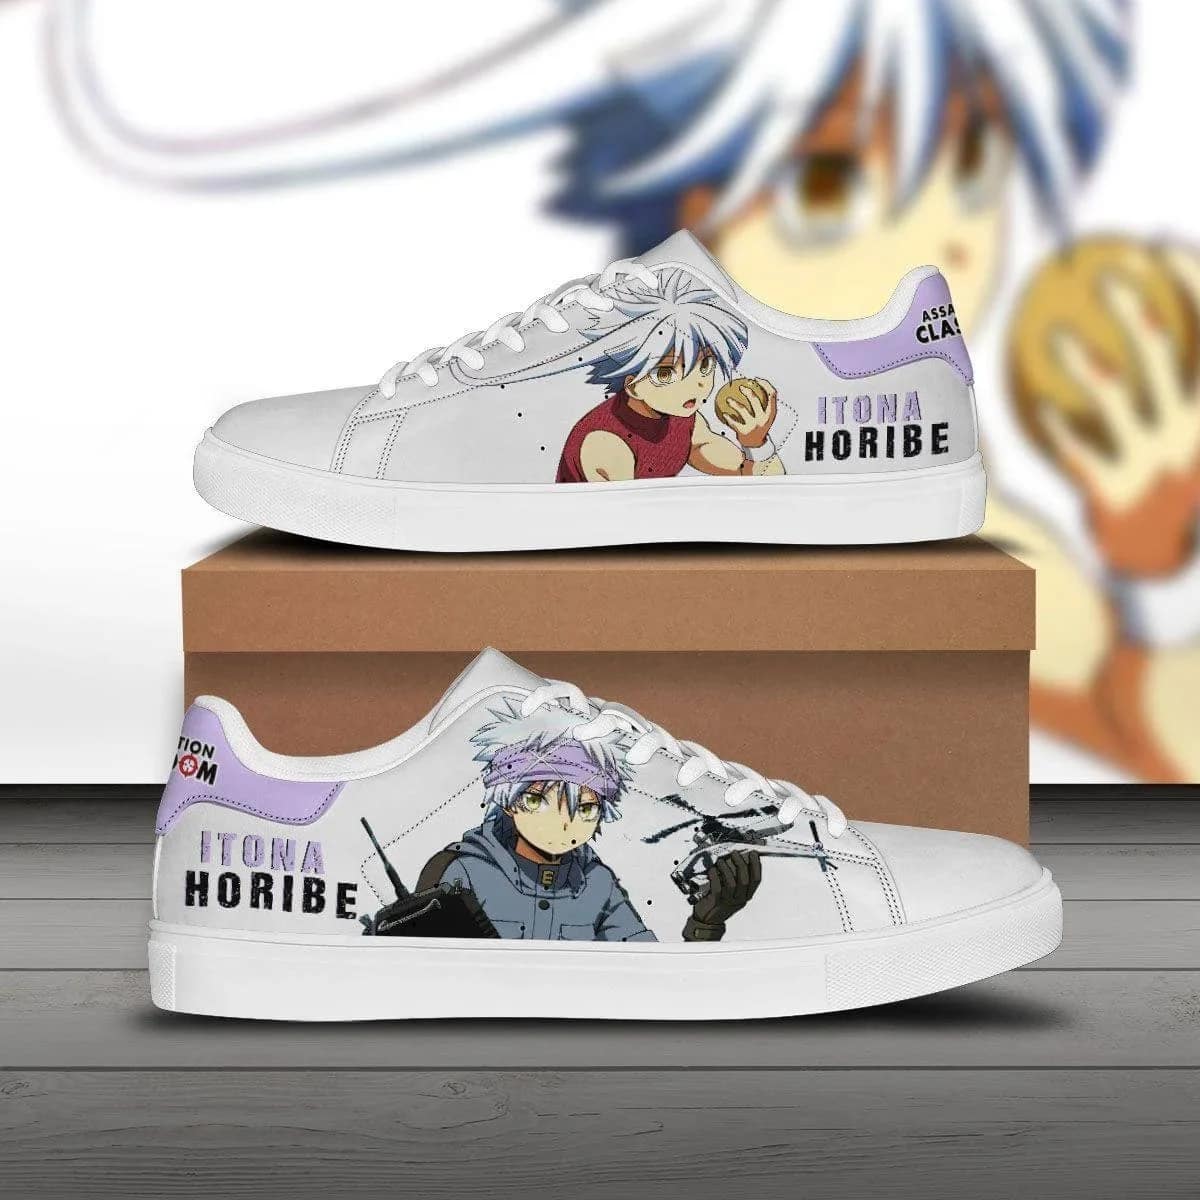 Itona Horibe Assassination Classroom Custom Anime Stan Smith Shoes